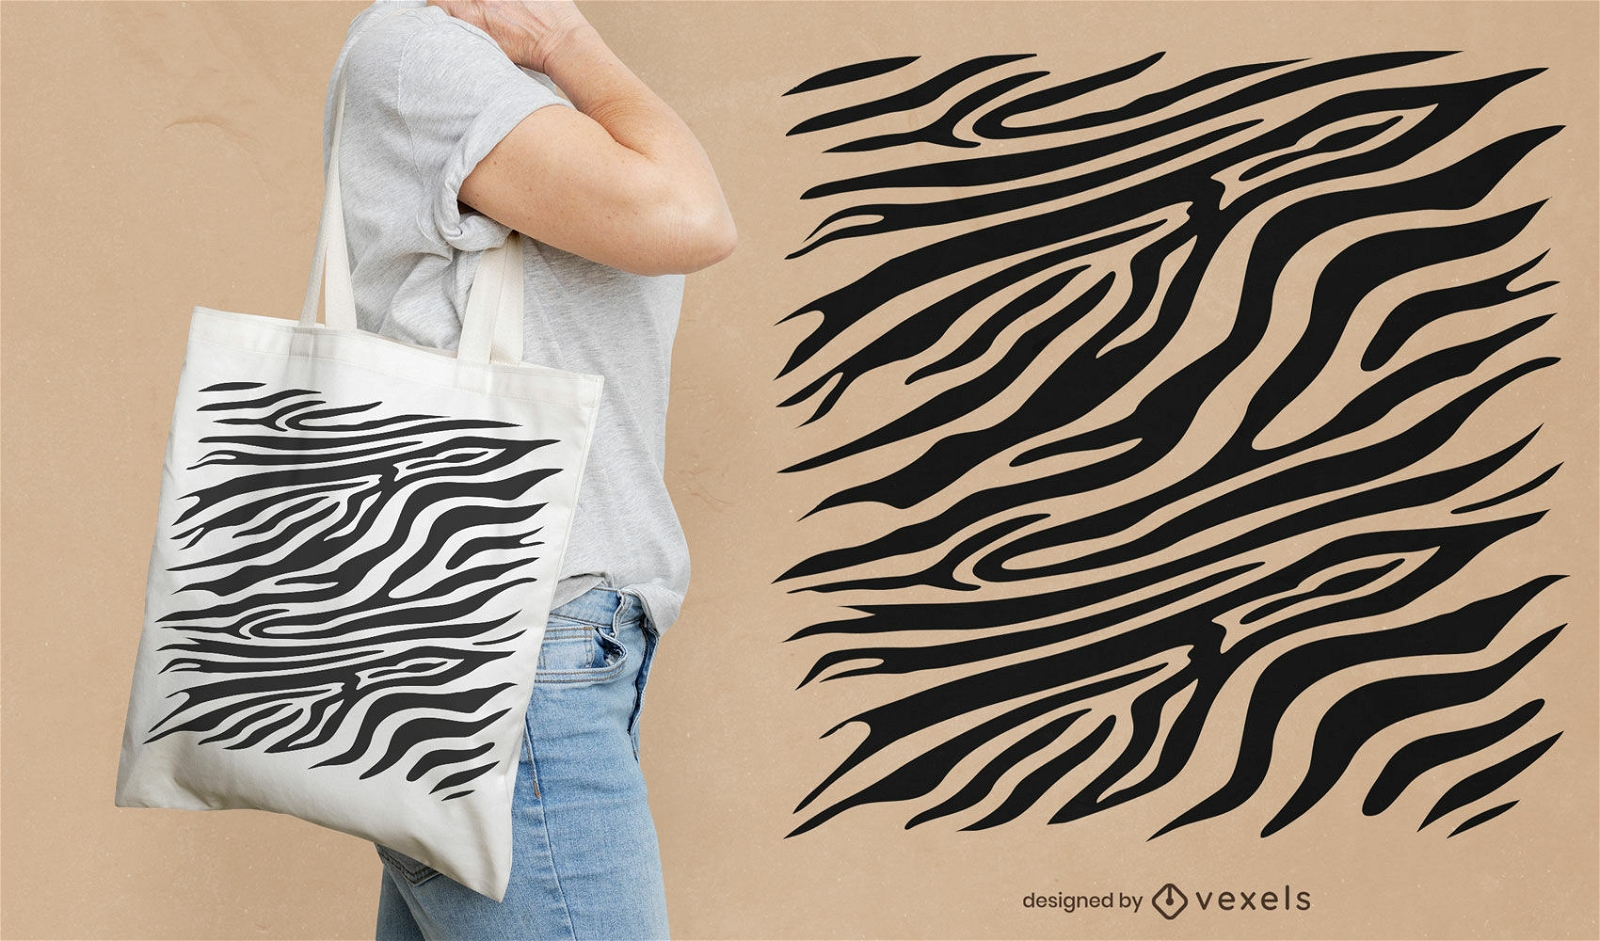 Padrão de zebra no design da sacola